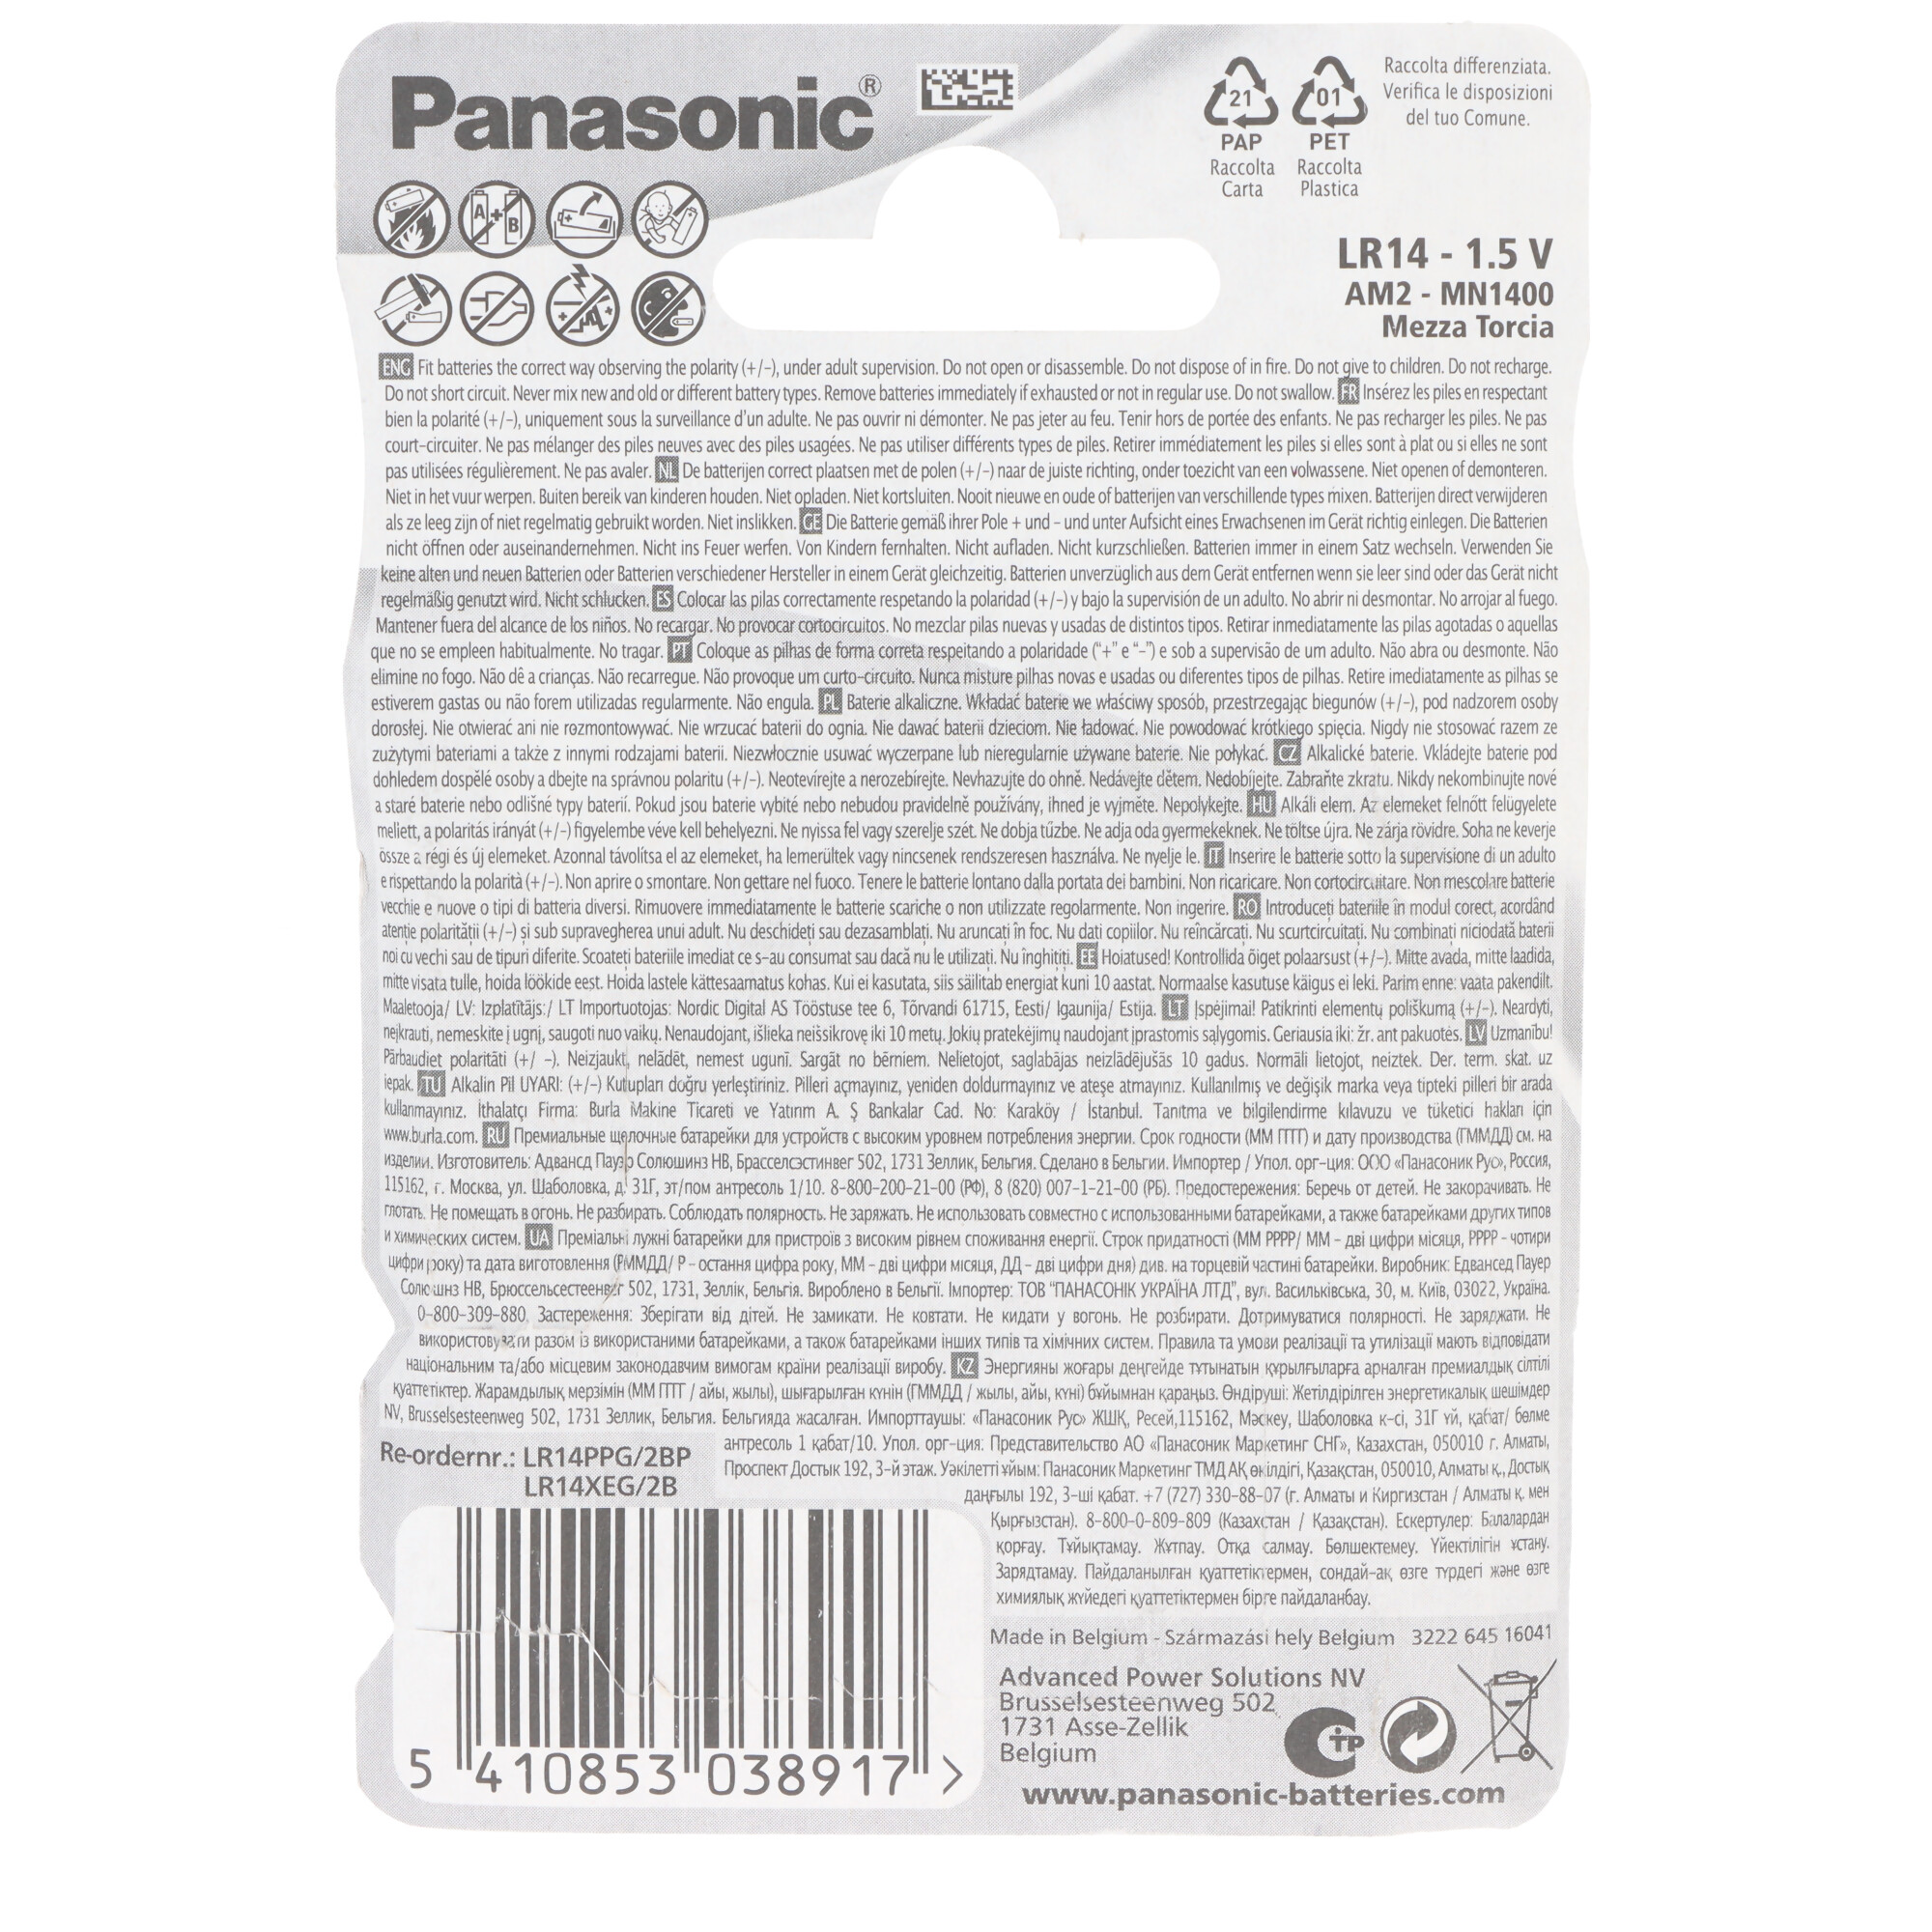 Panasonic Pro Power Baby C LR14 Alkaline Batterie im 2er Blister